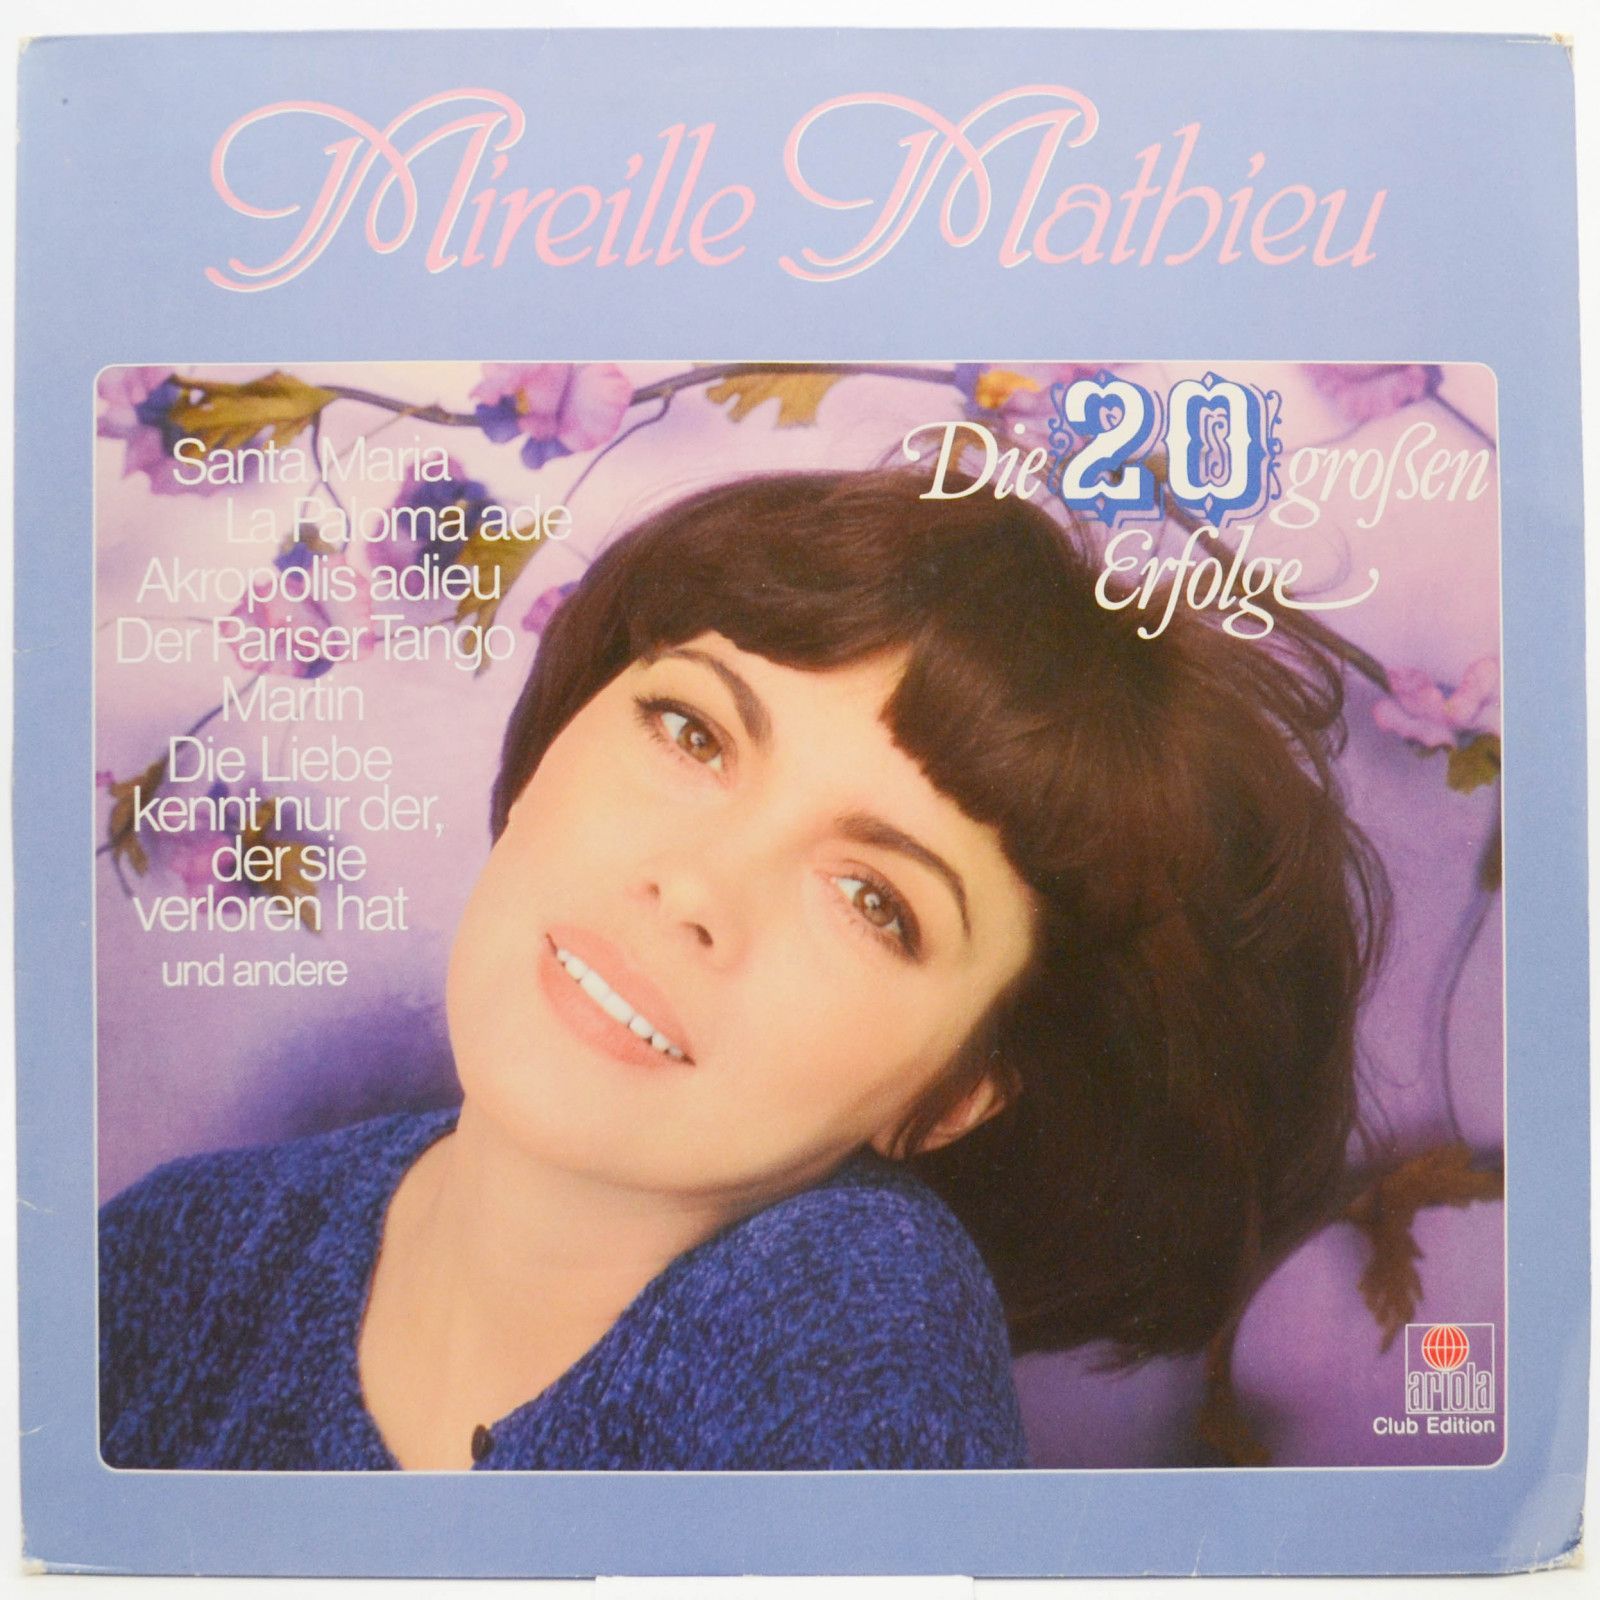 Mireille Mathieu — Die 20 Großen Erfolge, 1979